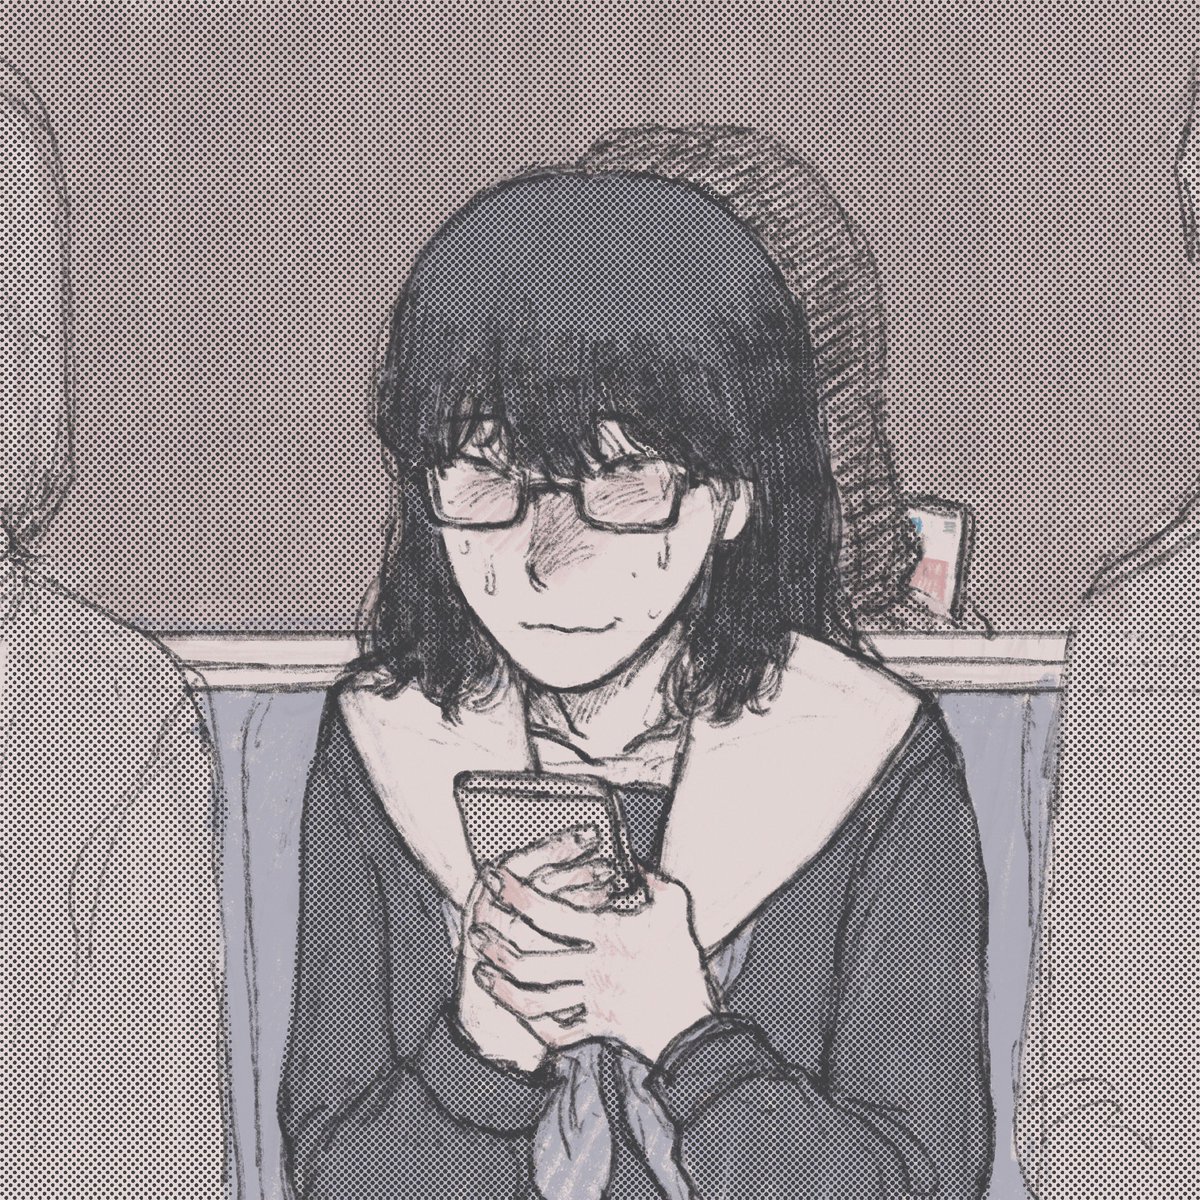 「電車内でpixivみてる #非垢抜偏屈眼鏡女性 」|御座井masのイラスト